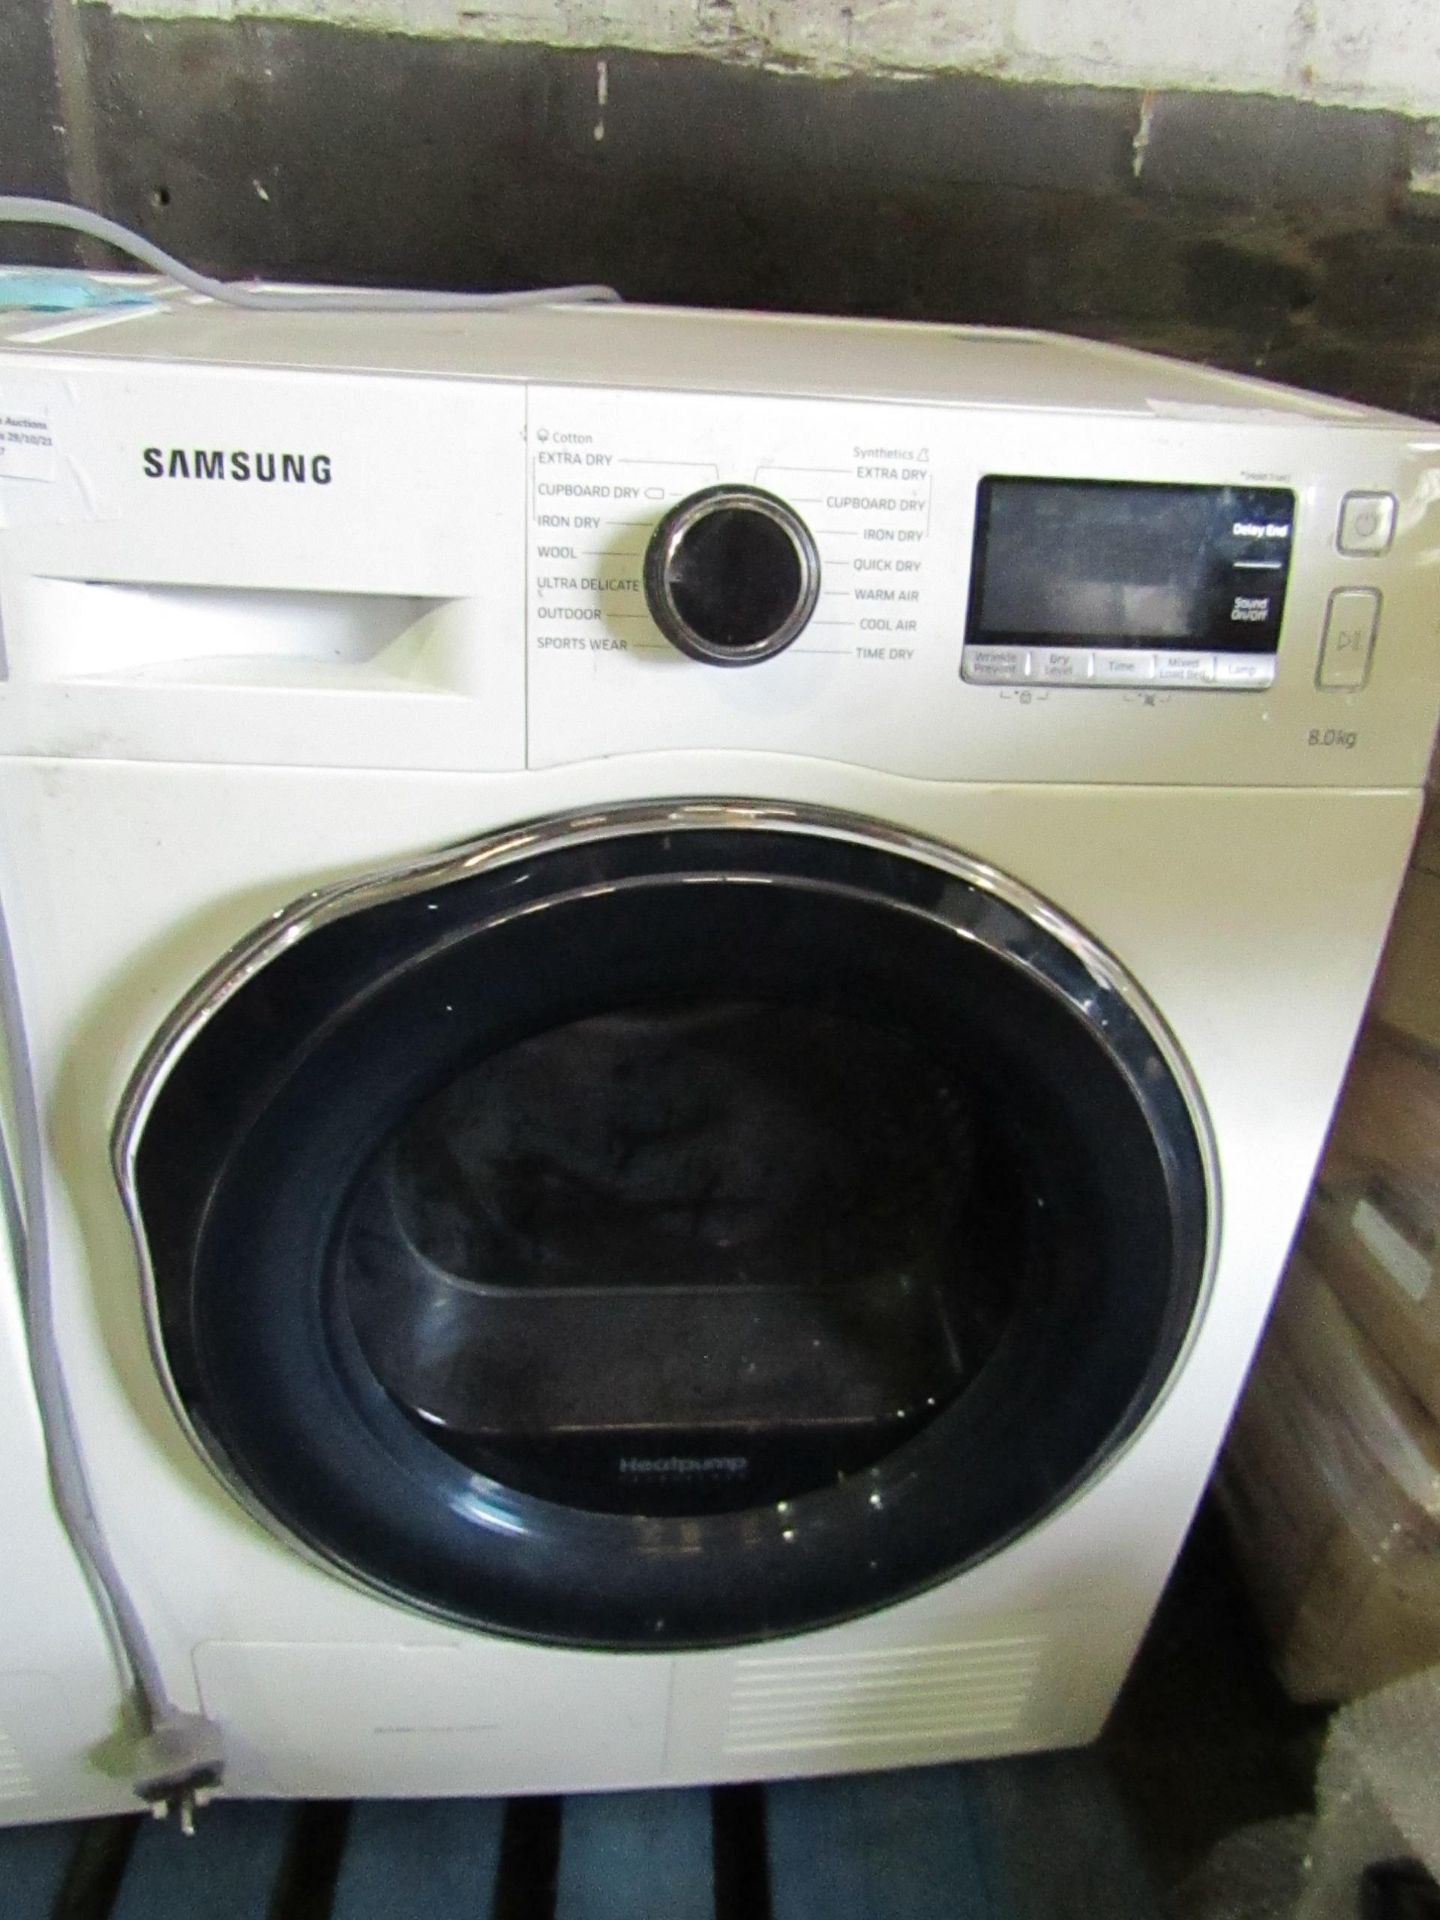 Samsung - 8.0KG Dryer - Tested for Spin.